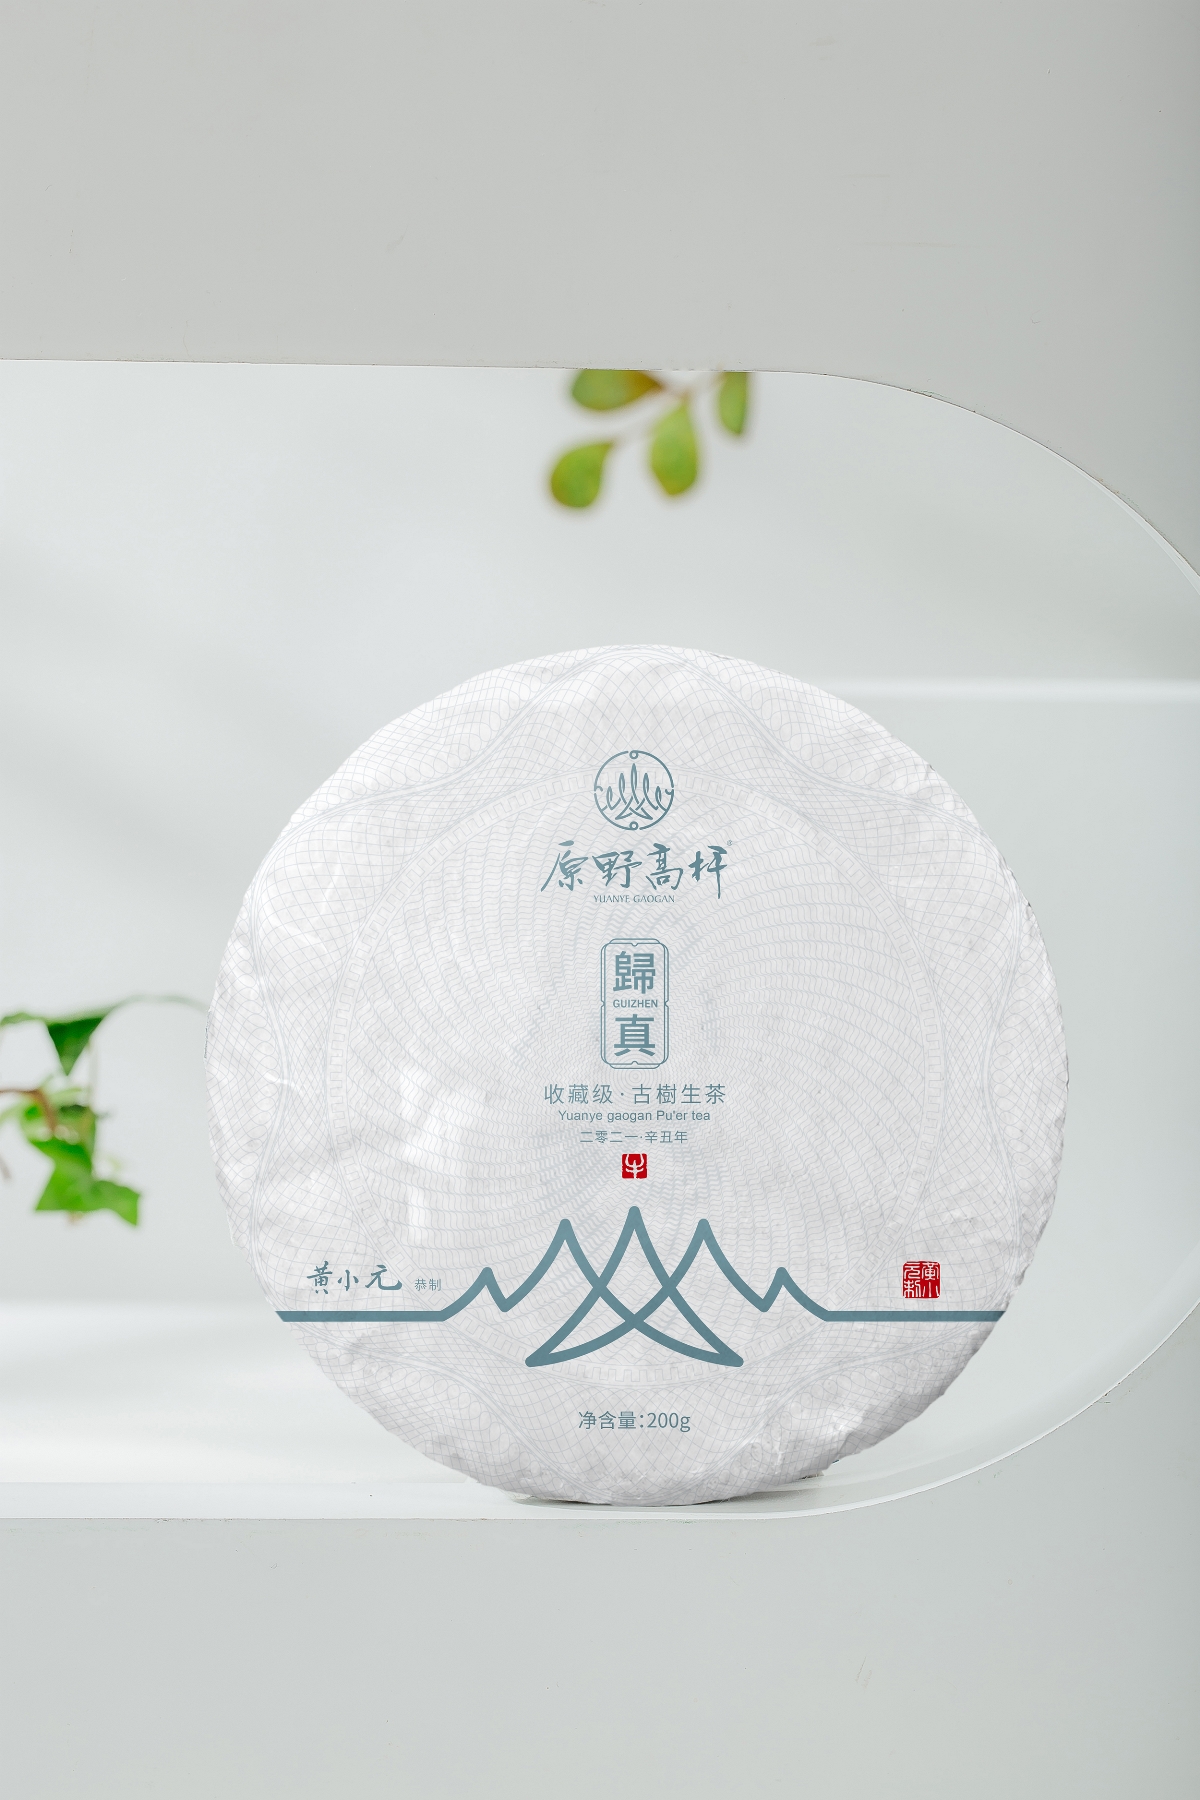 茶叶包装设计—意形社